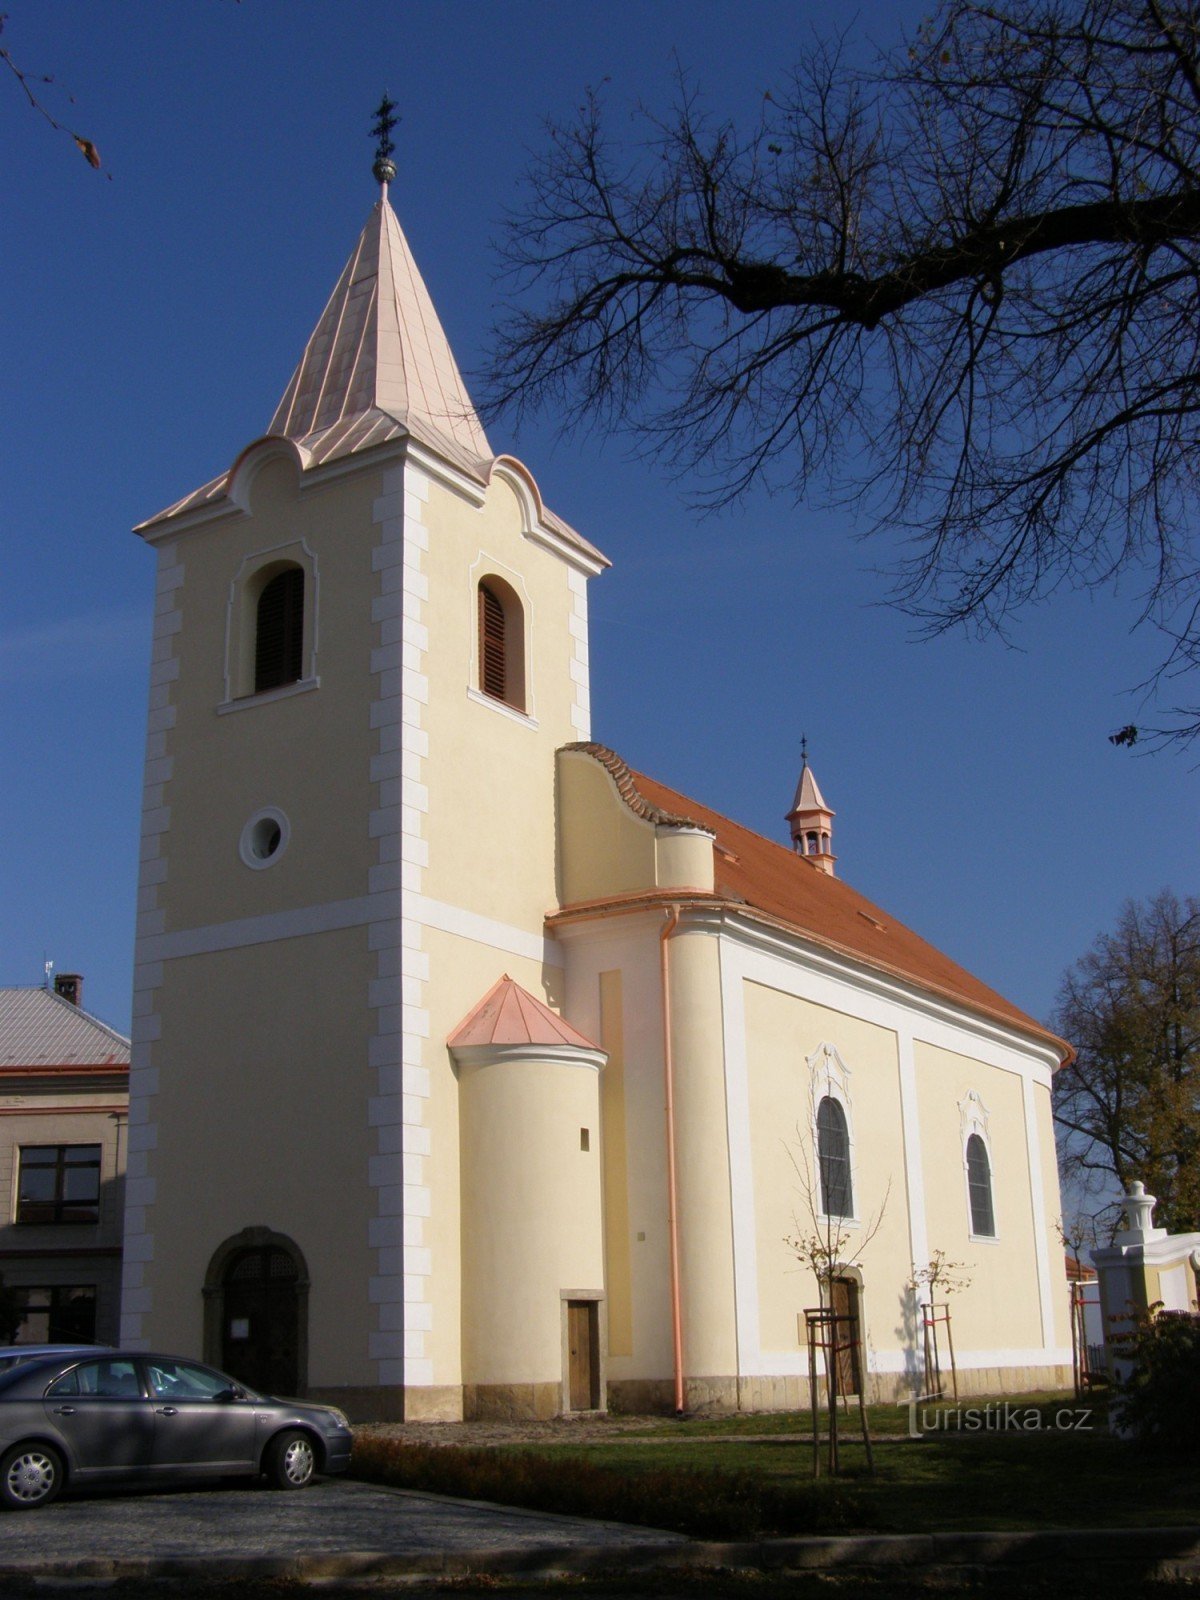 Týnec nad Labem - église de la décapitation de St. Jean le Baptiste